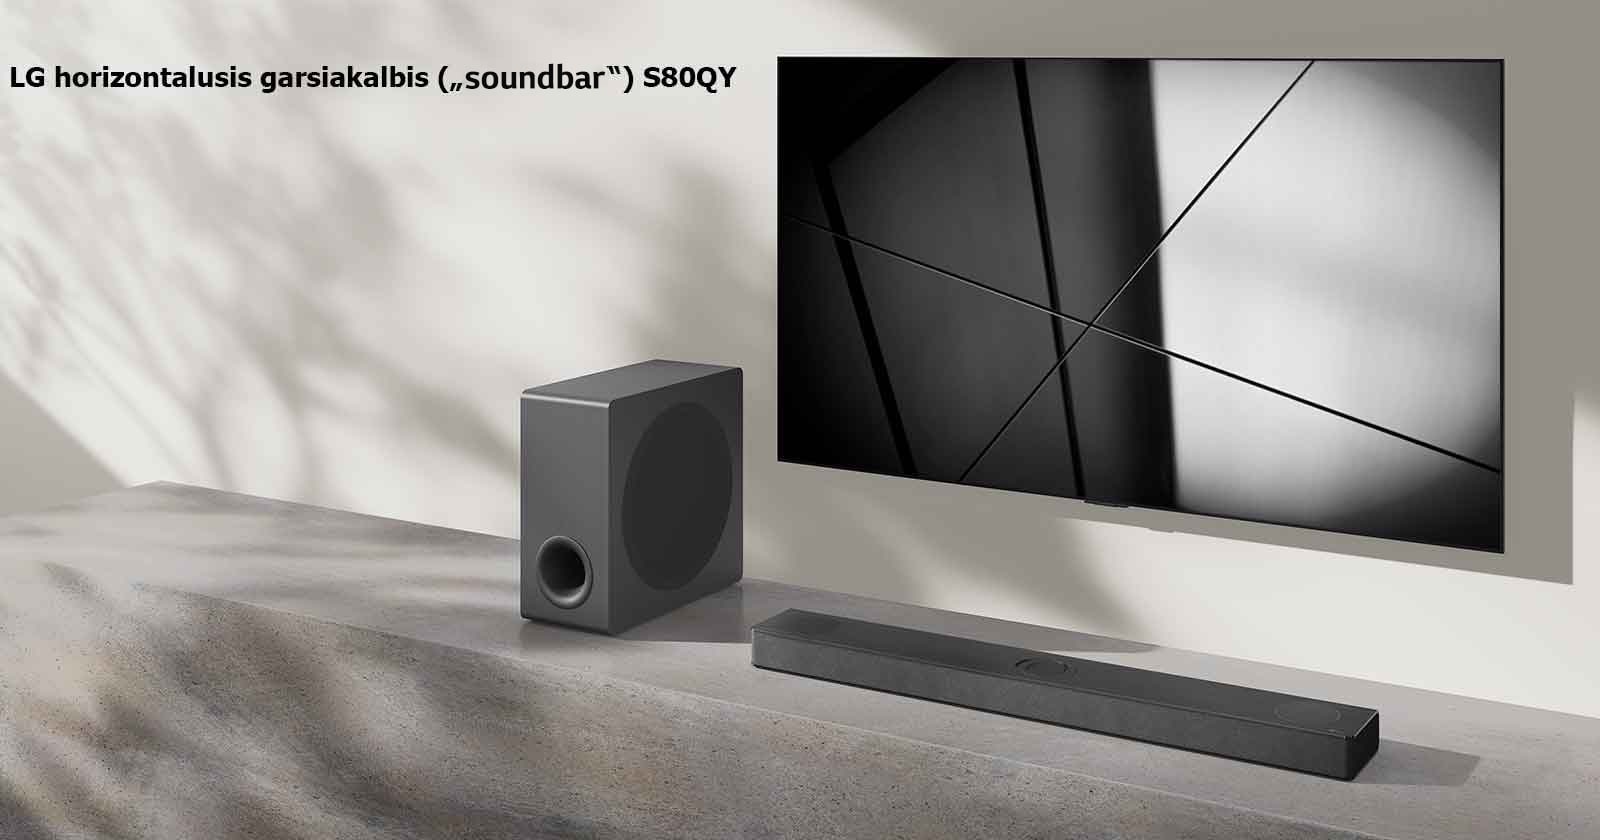 LG horizontalusis garsiakalbis („Sound Bar“) S80QY ir LG televizorius svetainėje pastatyti vienas šalia kito. Televizorius įjungtas, jame rodomas juodos ir baltos spalvų atvaizdas.